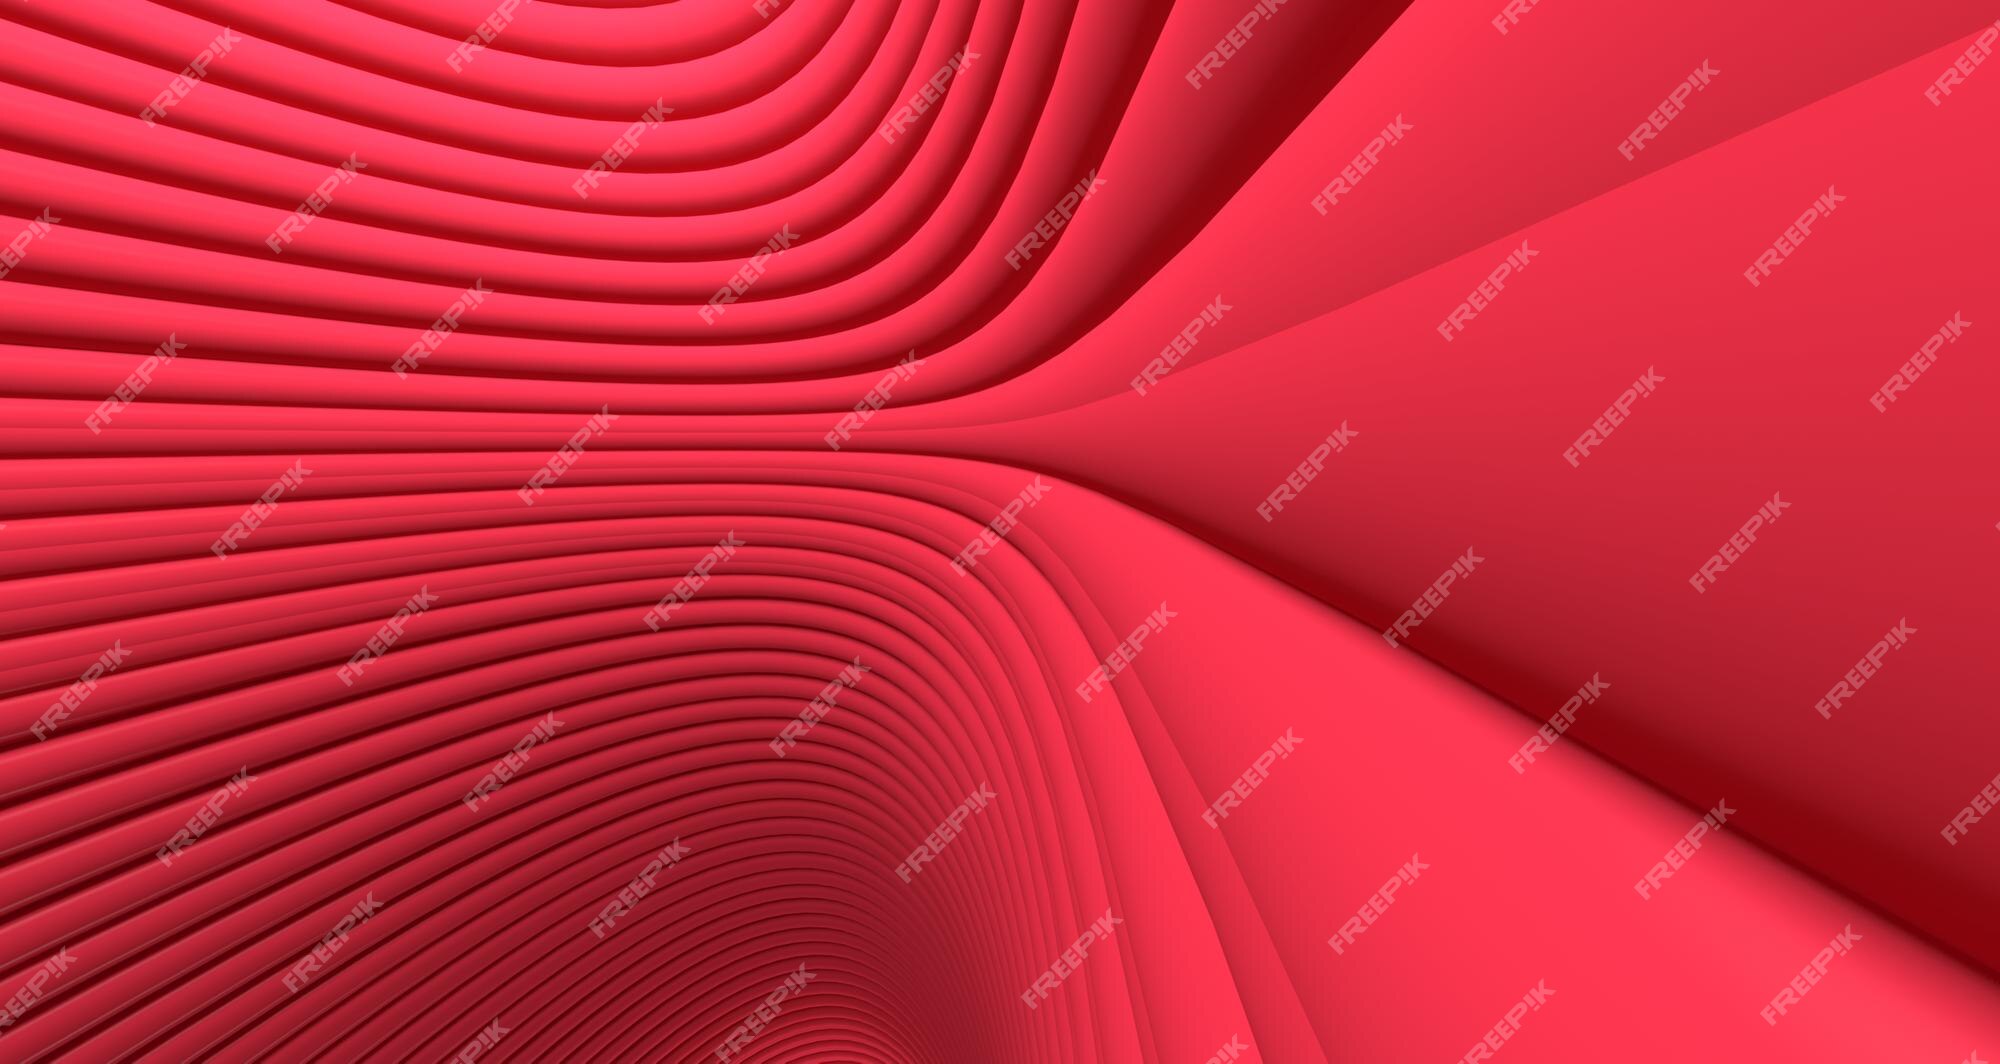 Hình nền trừu tượng 3D màu đỏ hồng là sự kết hợp tuyệt vời giữa màu sắc và nghệ thuật 3D. Hãy tận hưởng bức tranh trừu tượng đầy sáng tạo, đem lại cho bạn sự nổi bật và cuốn hút ngay từ cái nhìn đầu tiên. Hình nền trừu tượng 3D màu đỏ hồng sẽ khiến máy tính của bạn trở nên độc đáo hơn bao giờ hết.